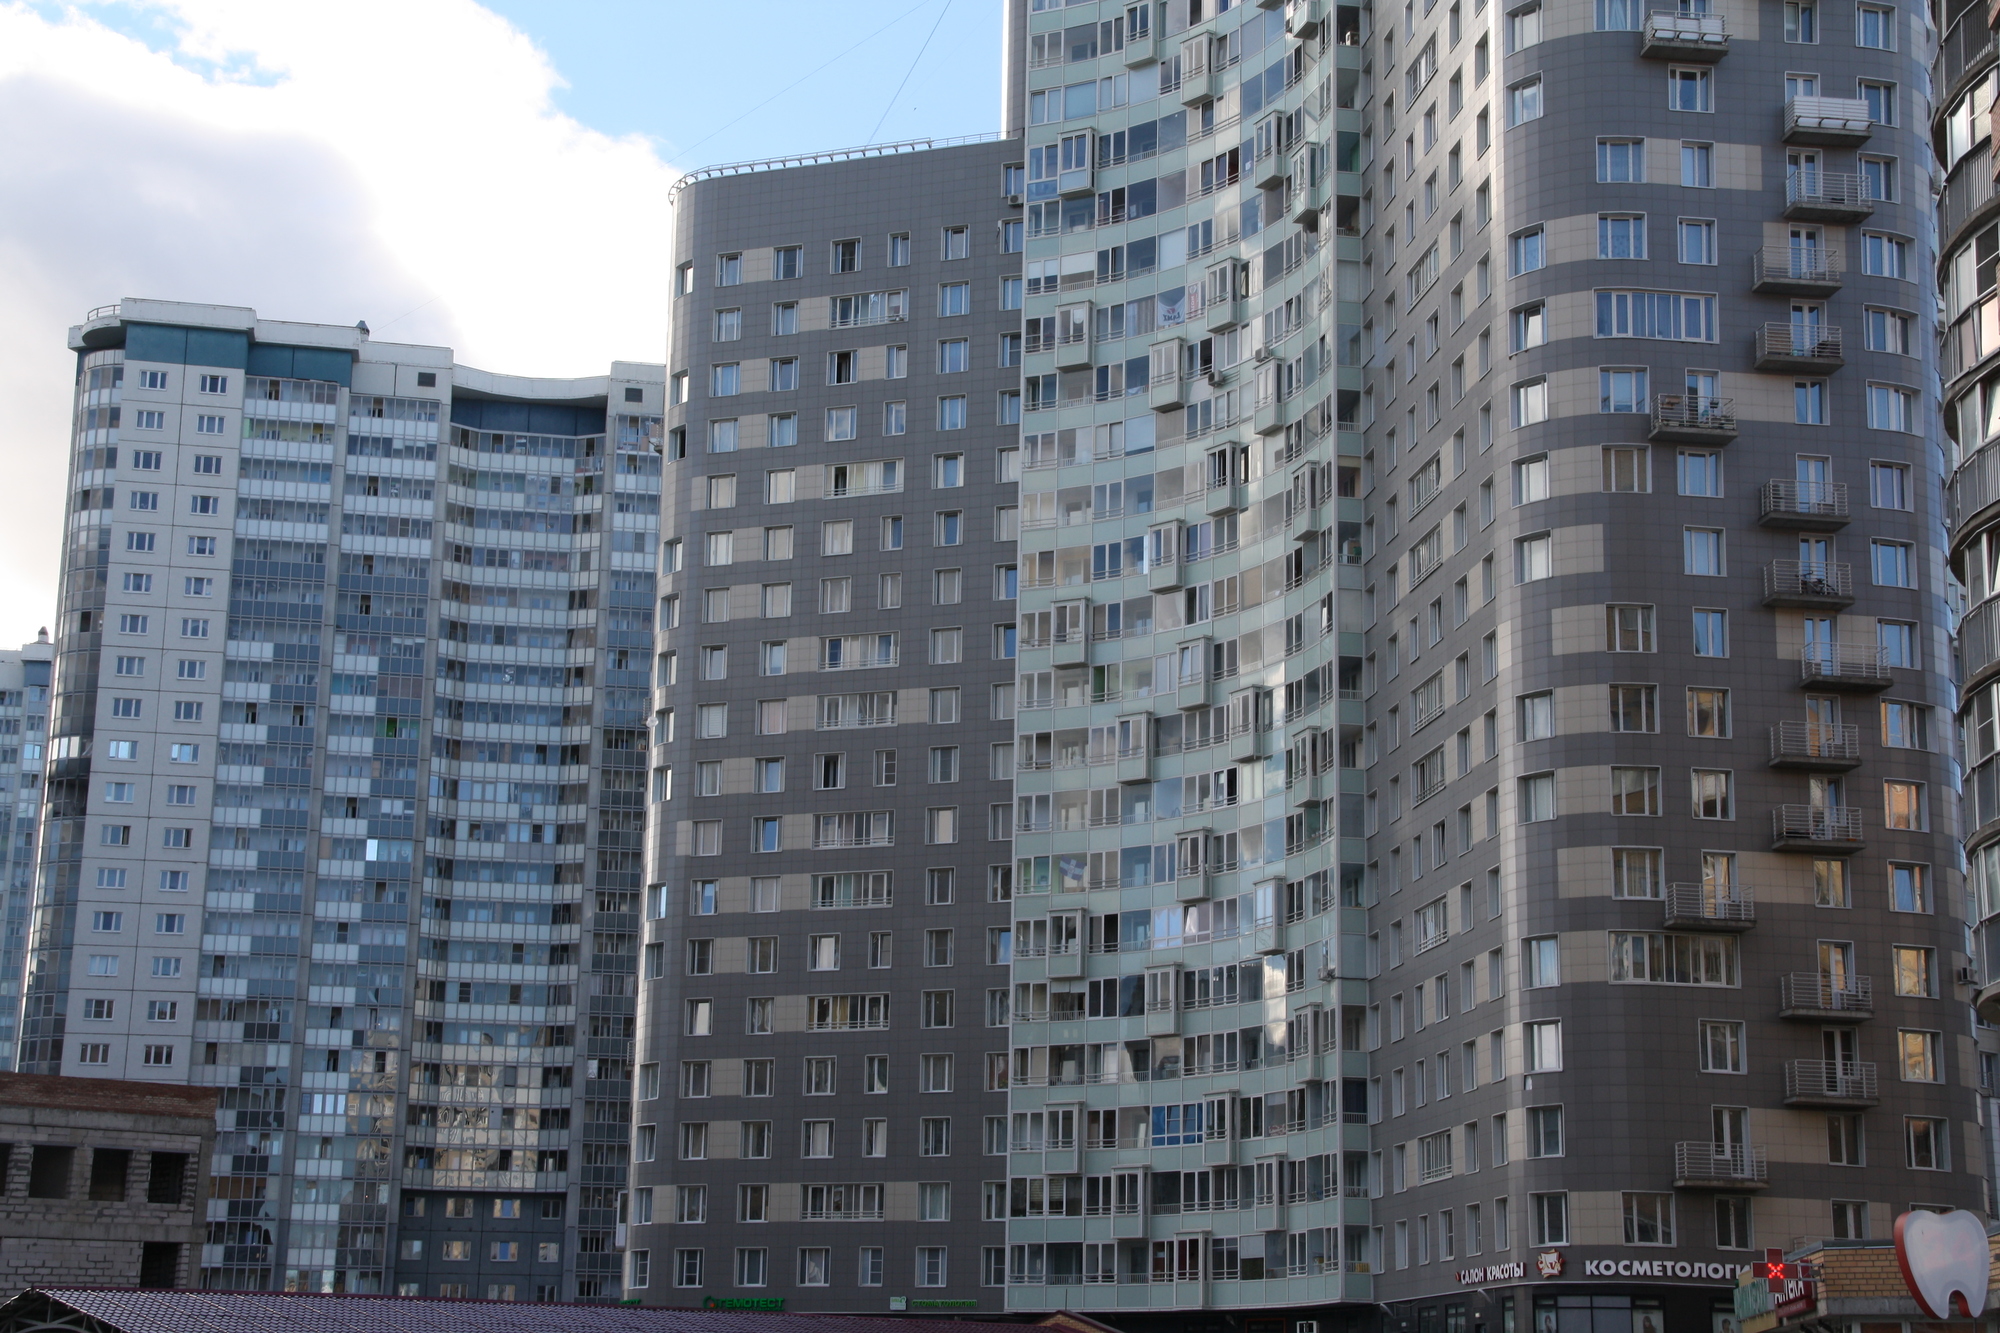 Петербург лидирует  по объему арендного жилья в России